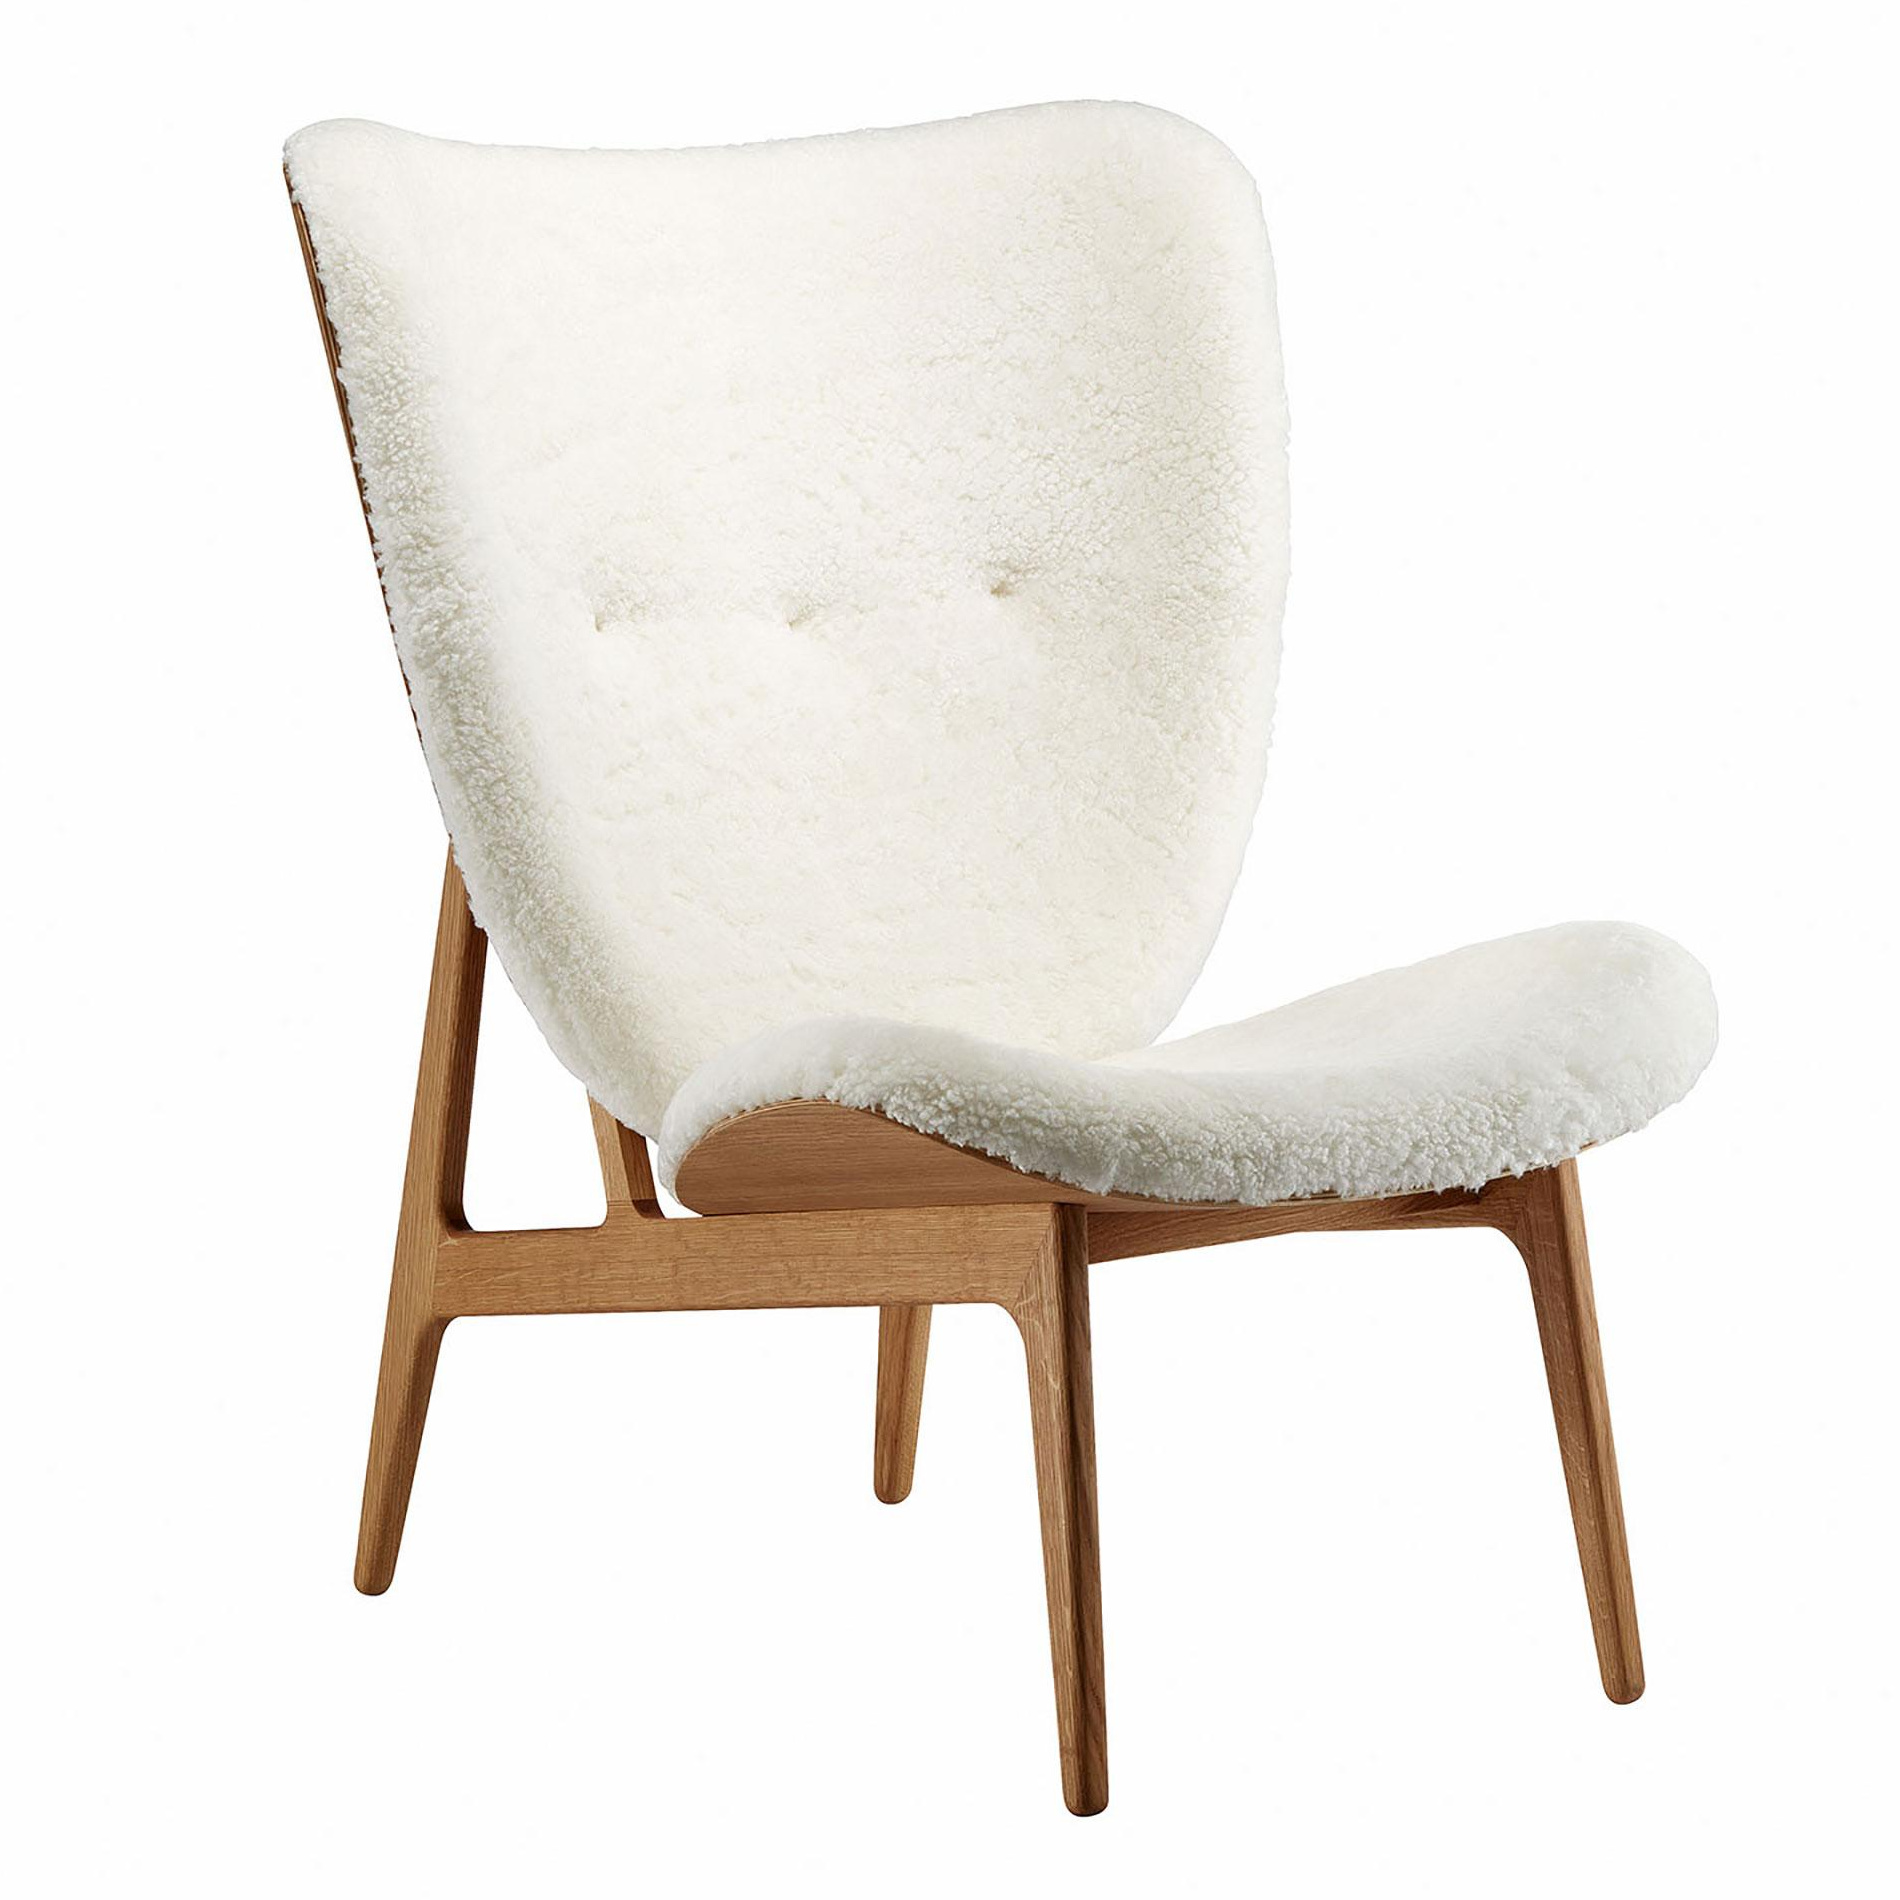 NORR 11 - Elephant Lounge Sessel Schaffell geräucherte Eiche - off-white/Sitzfläche Schaffell/Gestell Eiche geräuchert/BxHxT 75x96x80cm von NORR 11